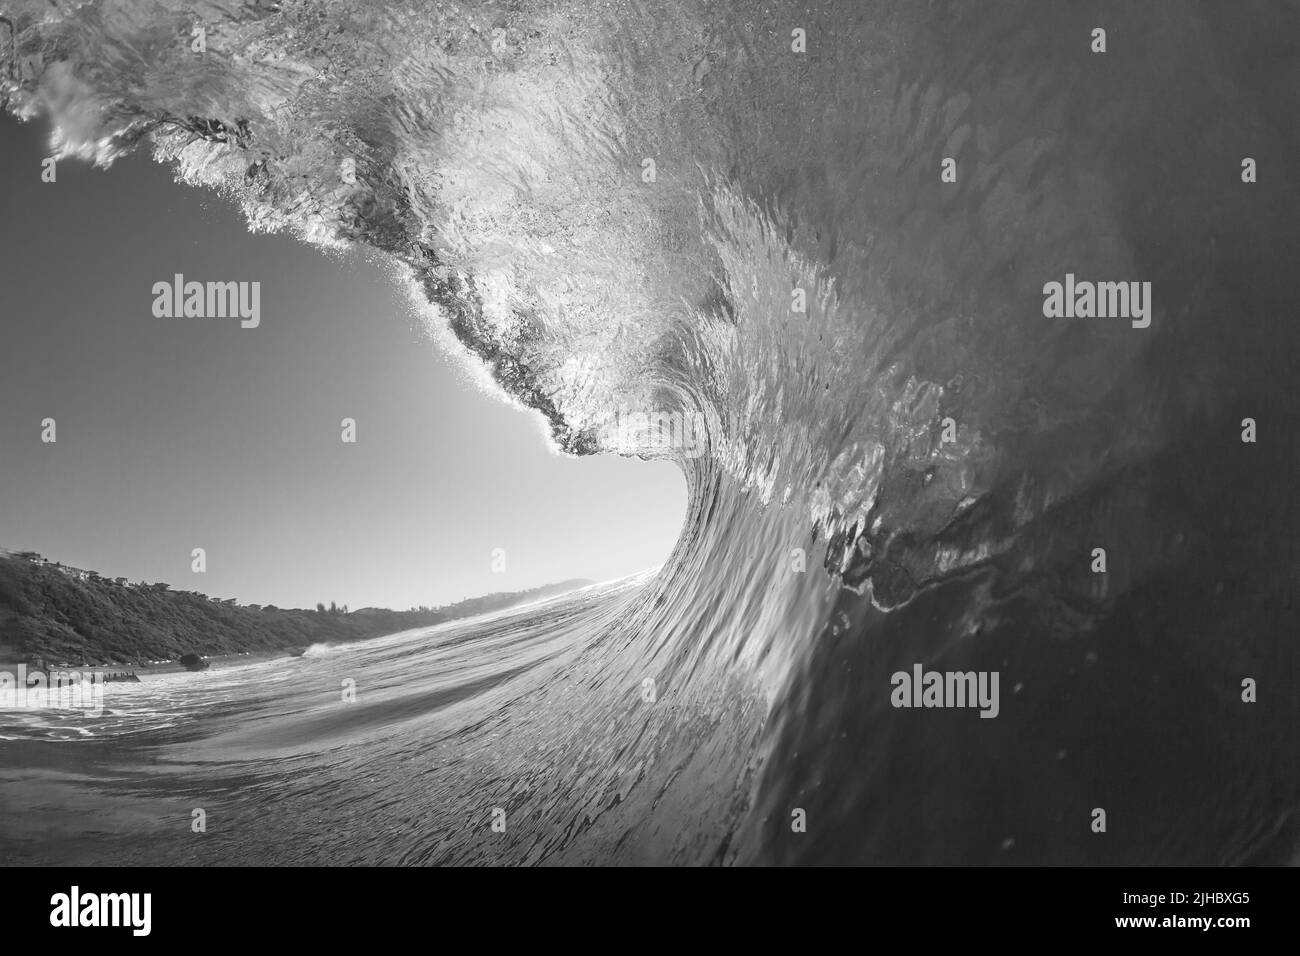 Oceano onda di mare nuoto surf vista interna prospettiva di crashing verticale cavo tubing acqua potenza in bianco nero contrasti. Foto Stock